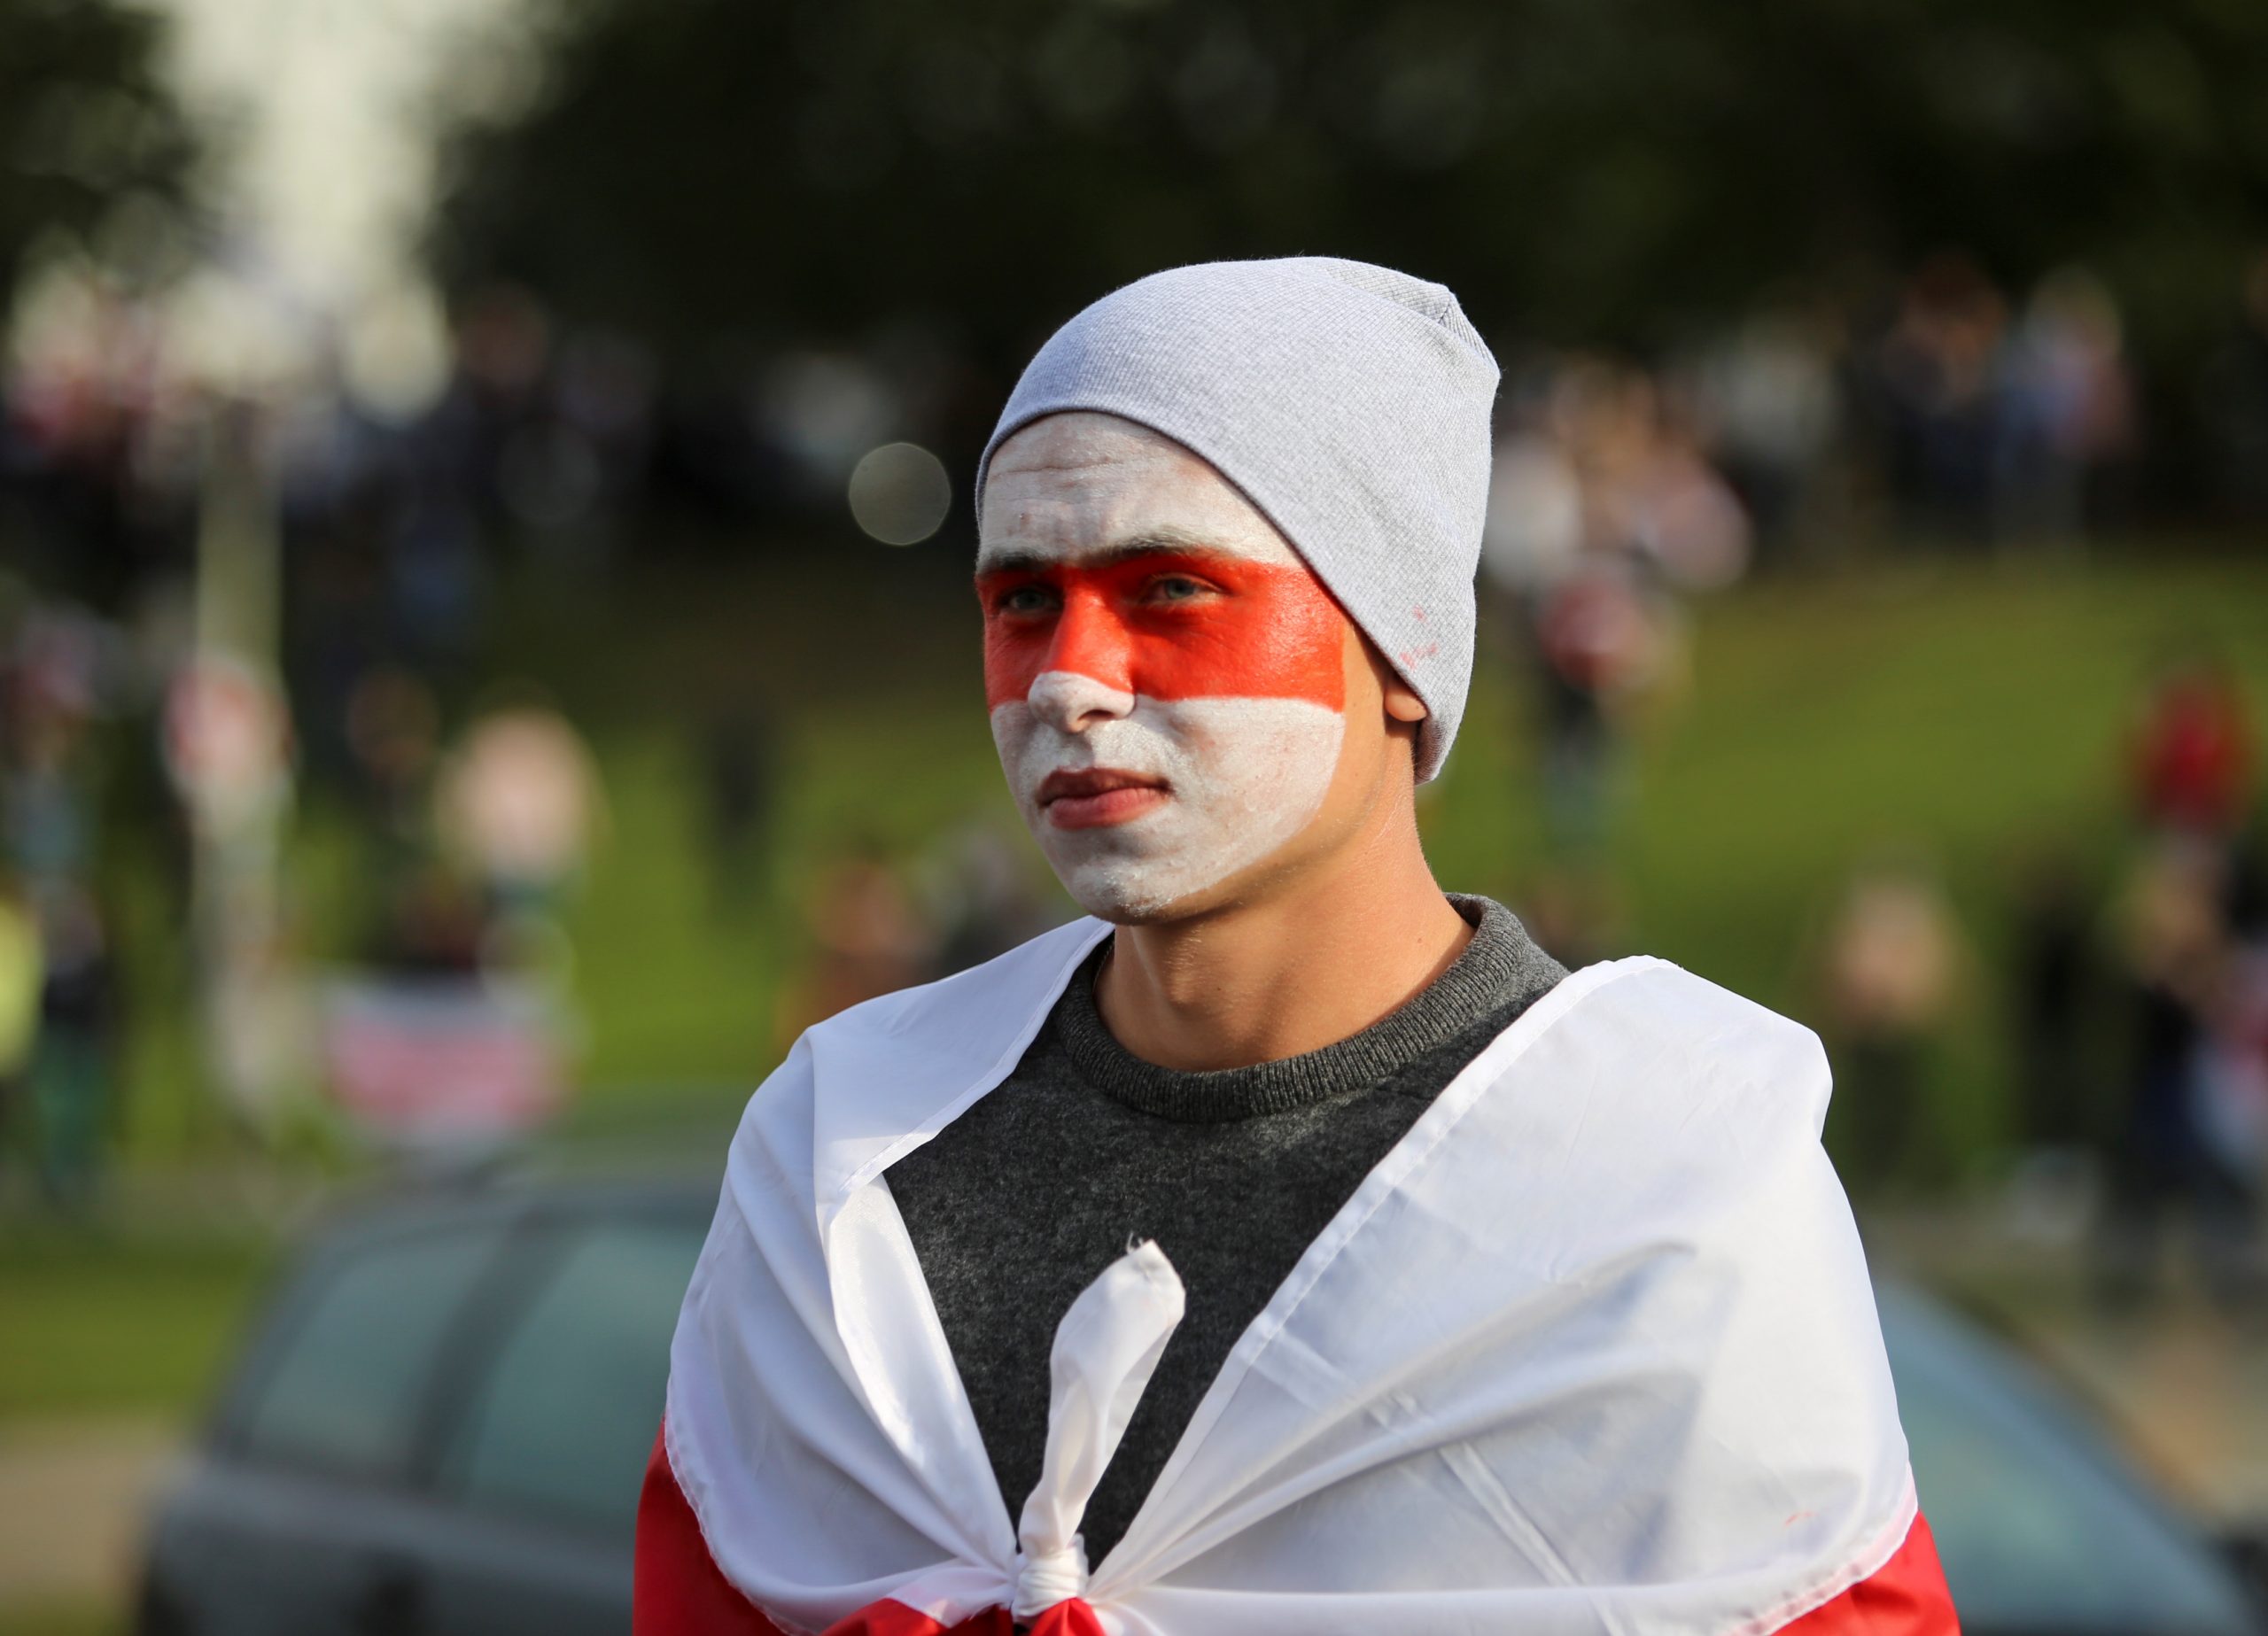 Участник акции протеста с оппозиционным флагом на лице. Фото REUTERS/Stringer/Scanpix/Leta